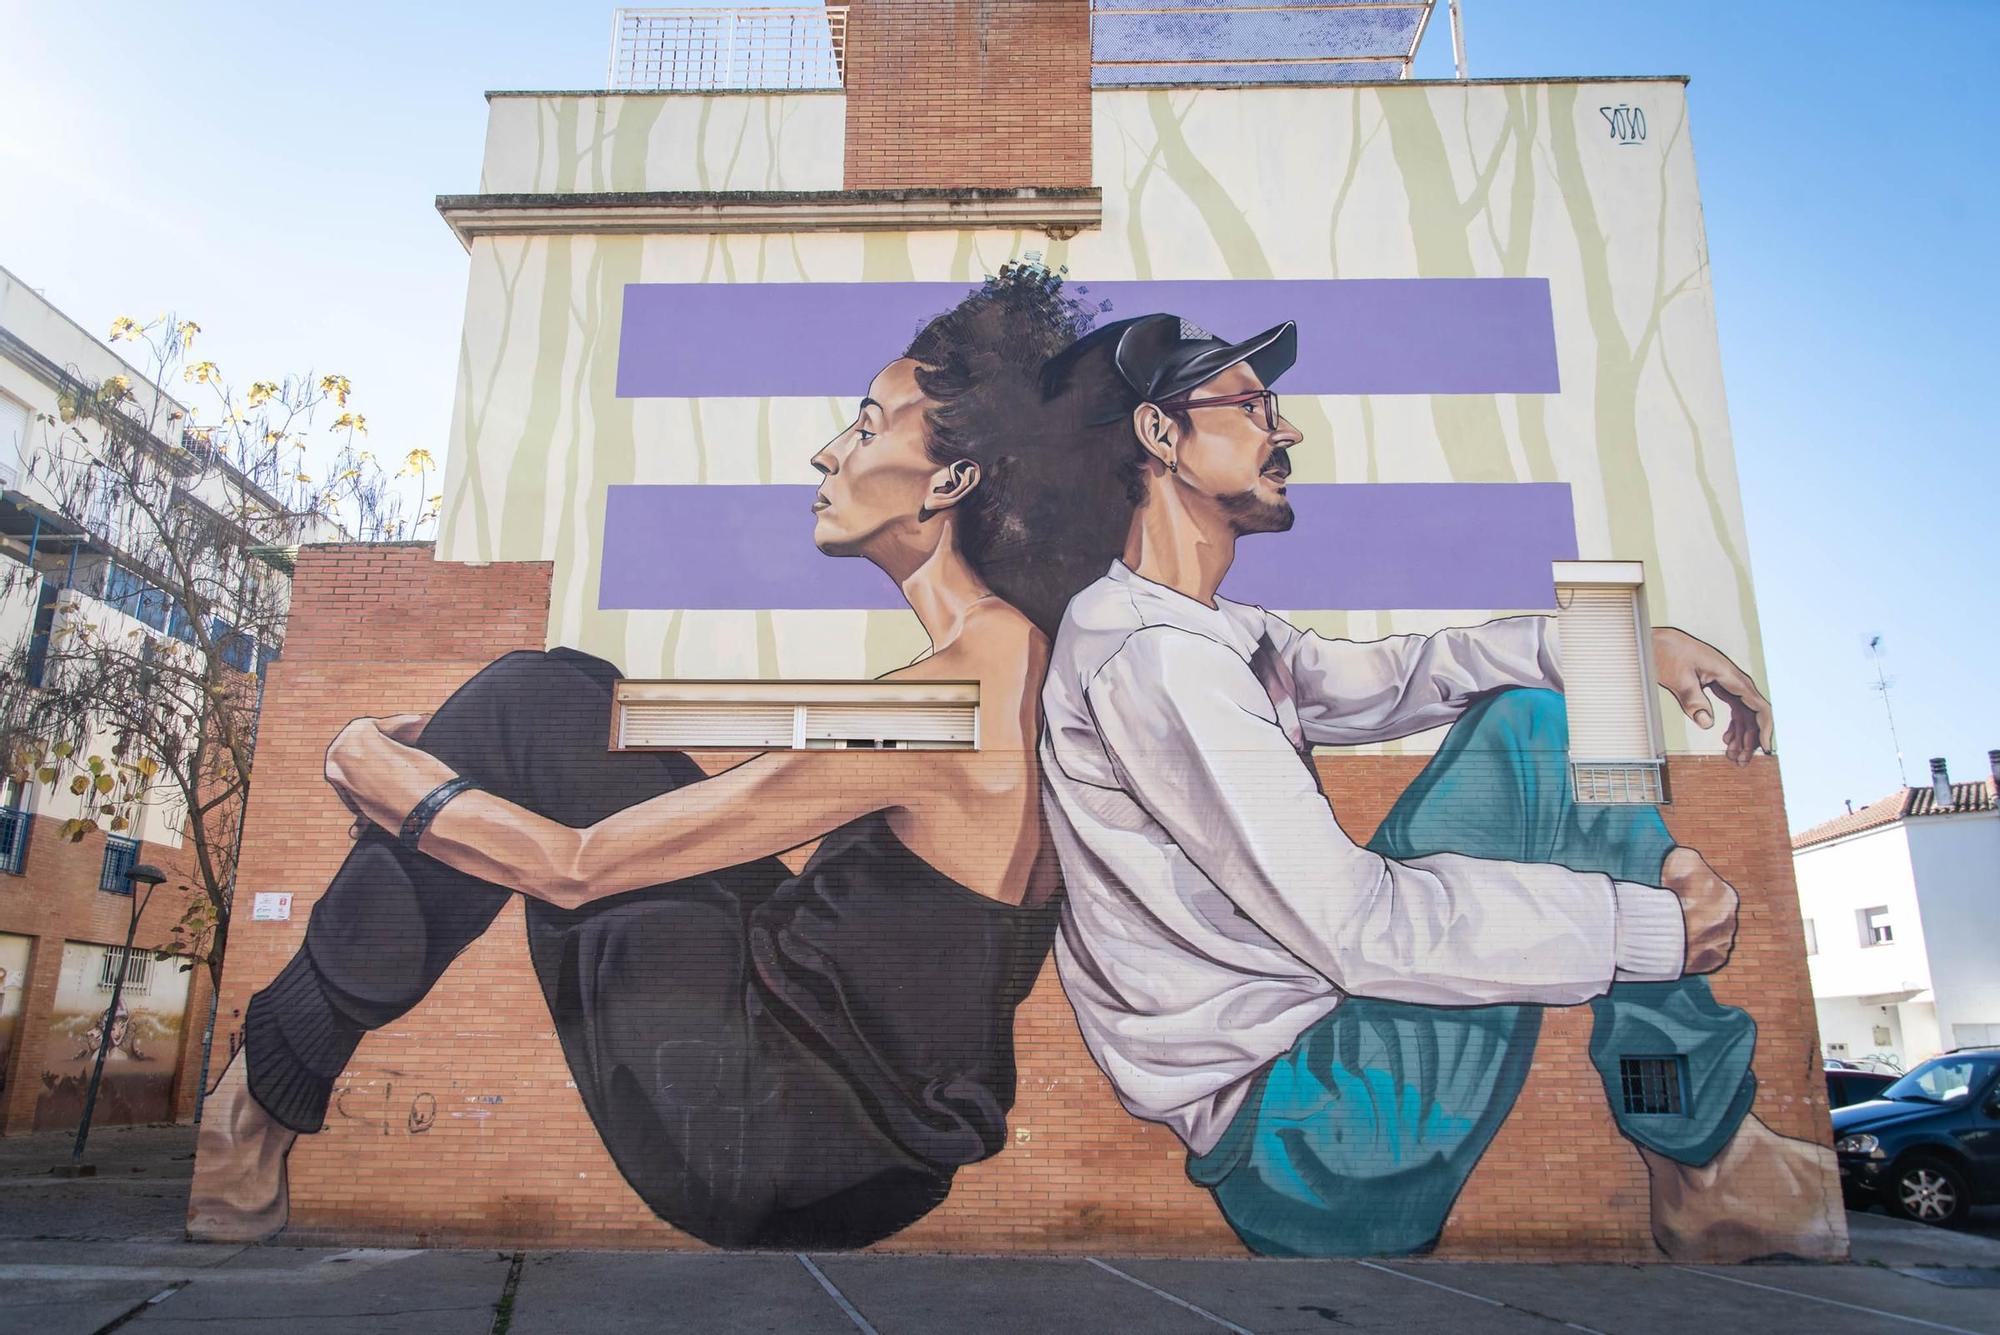 GALERÍA | Los 26 murales urbanos que llenan de color el paisaje de Mérida